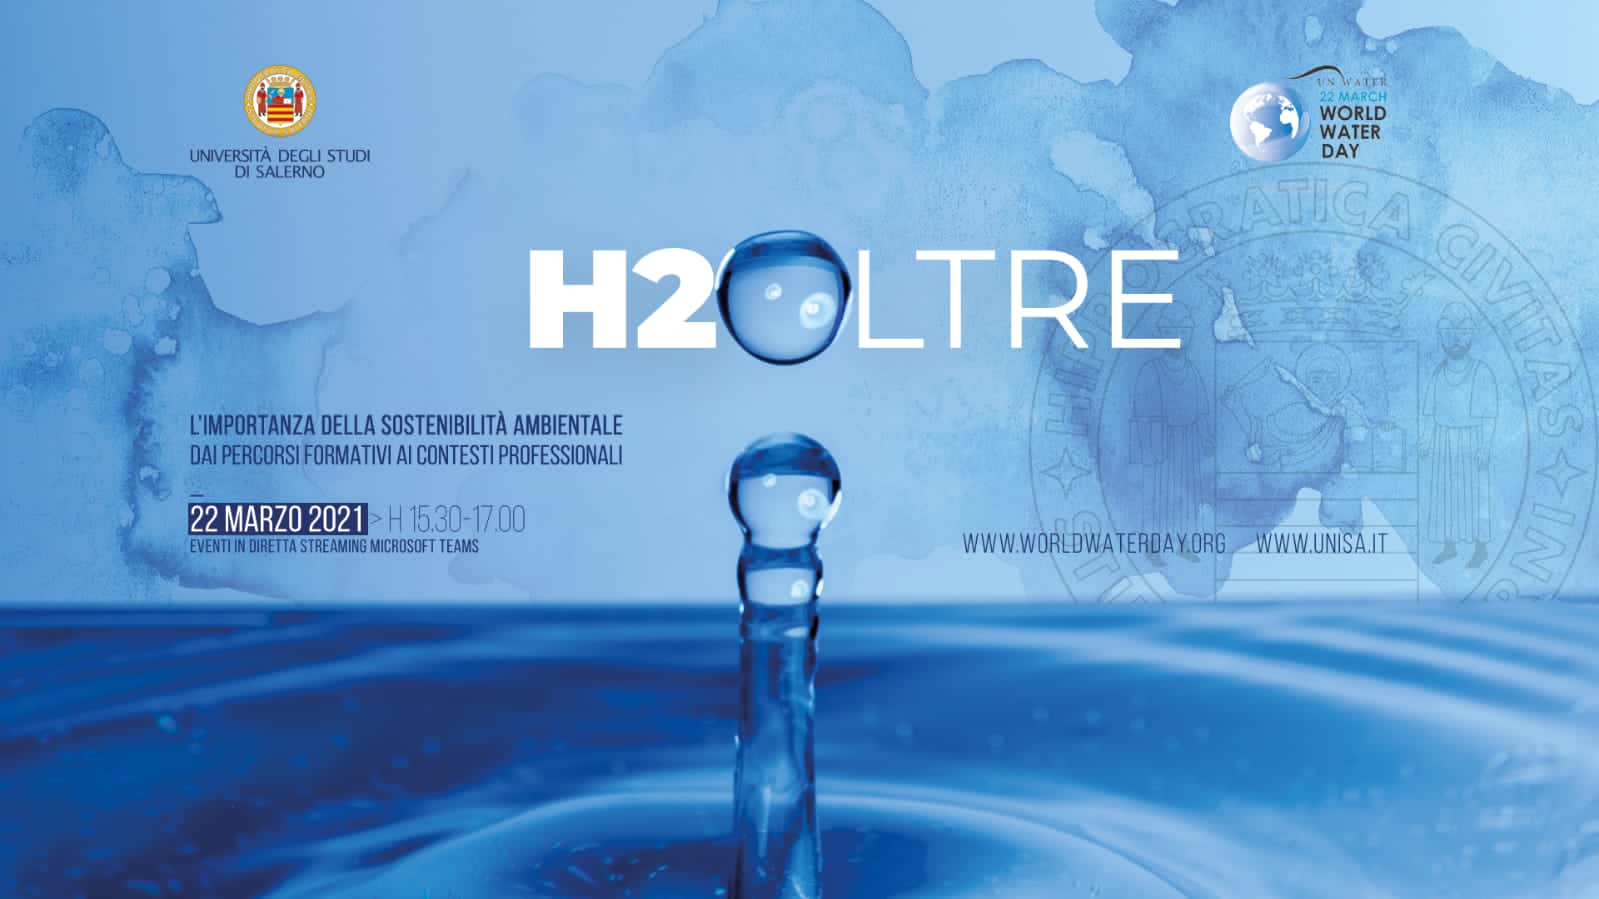 Acqua E Sviluppo Sostenibile: L’Ateneo Salernitano Lancia L’evento “H2Oltre”